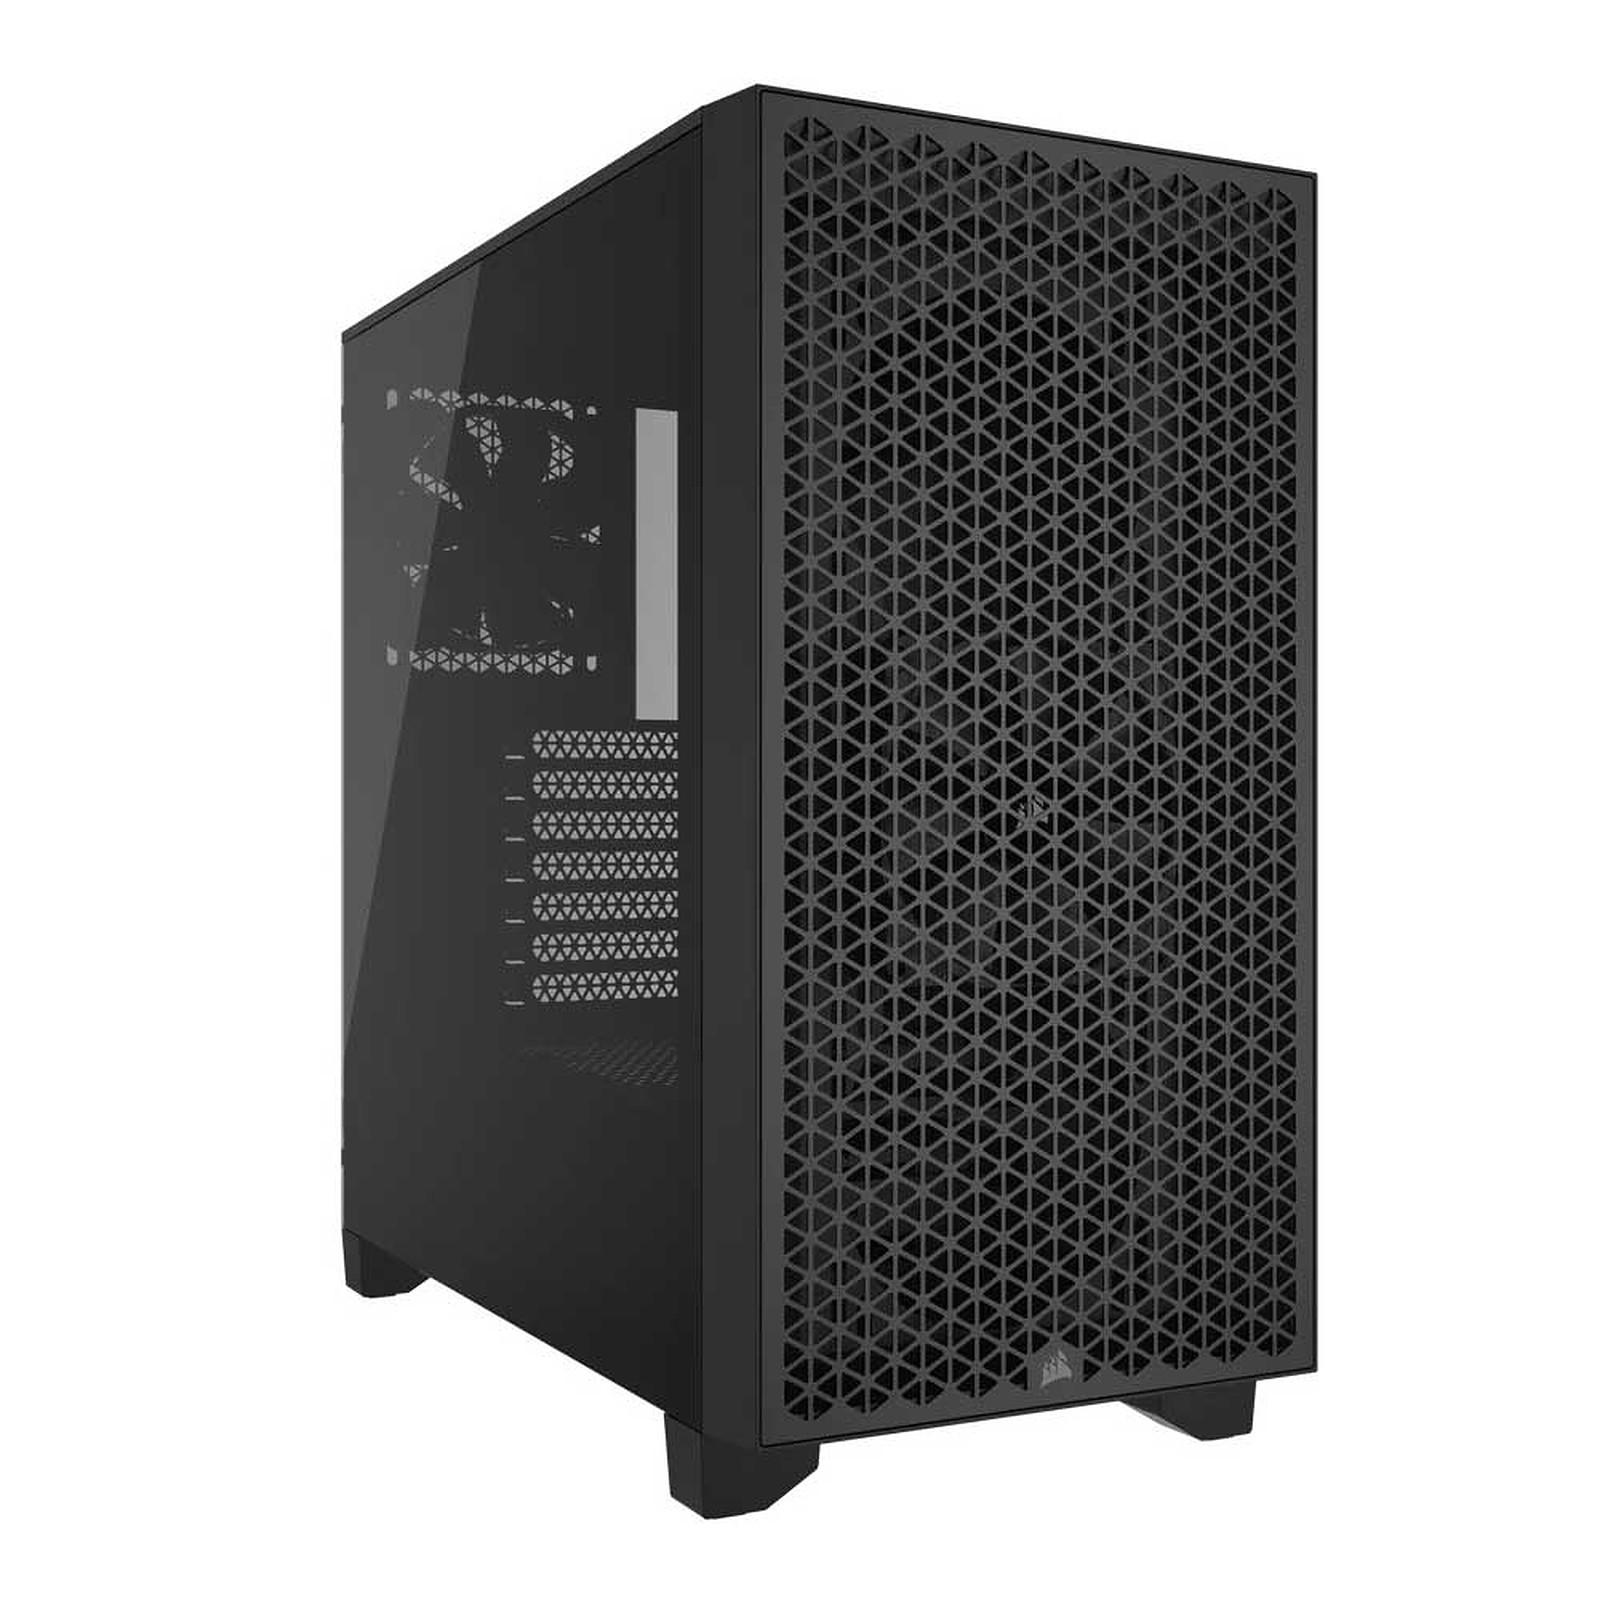 3000D AIRFLOW MID-TOWER PC CASE BLACK